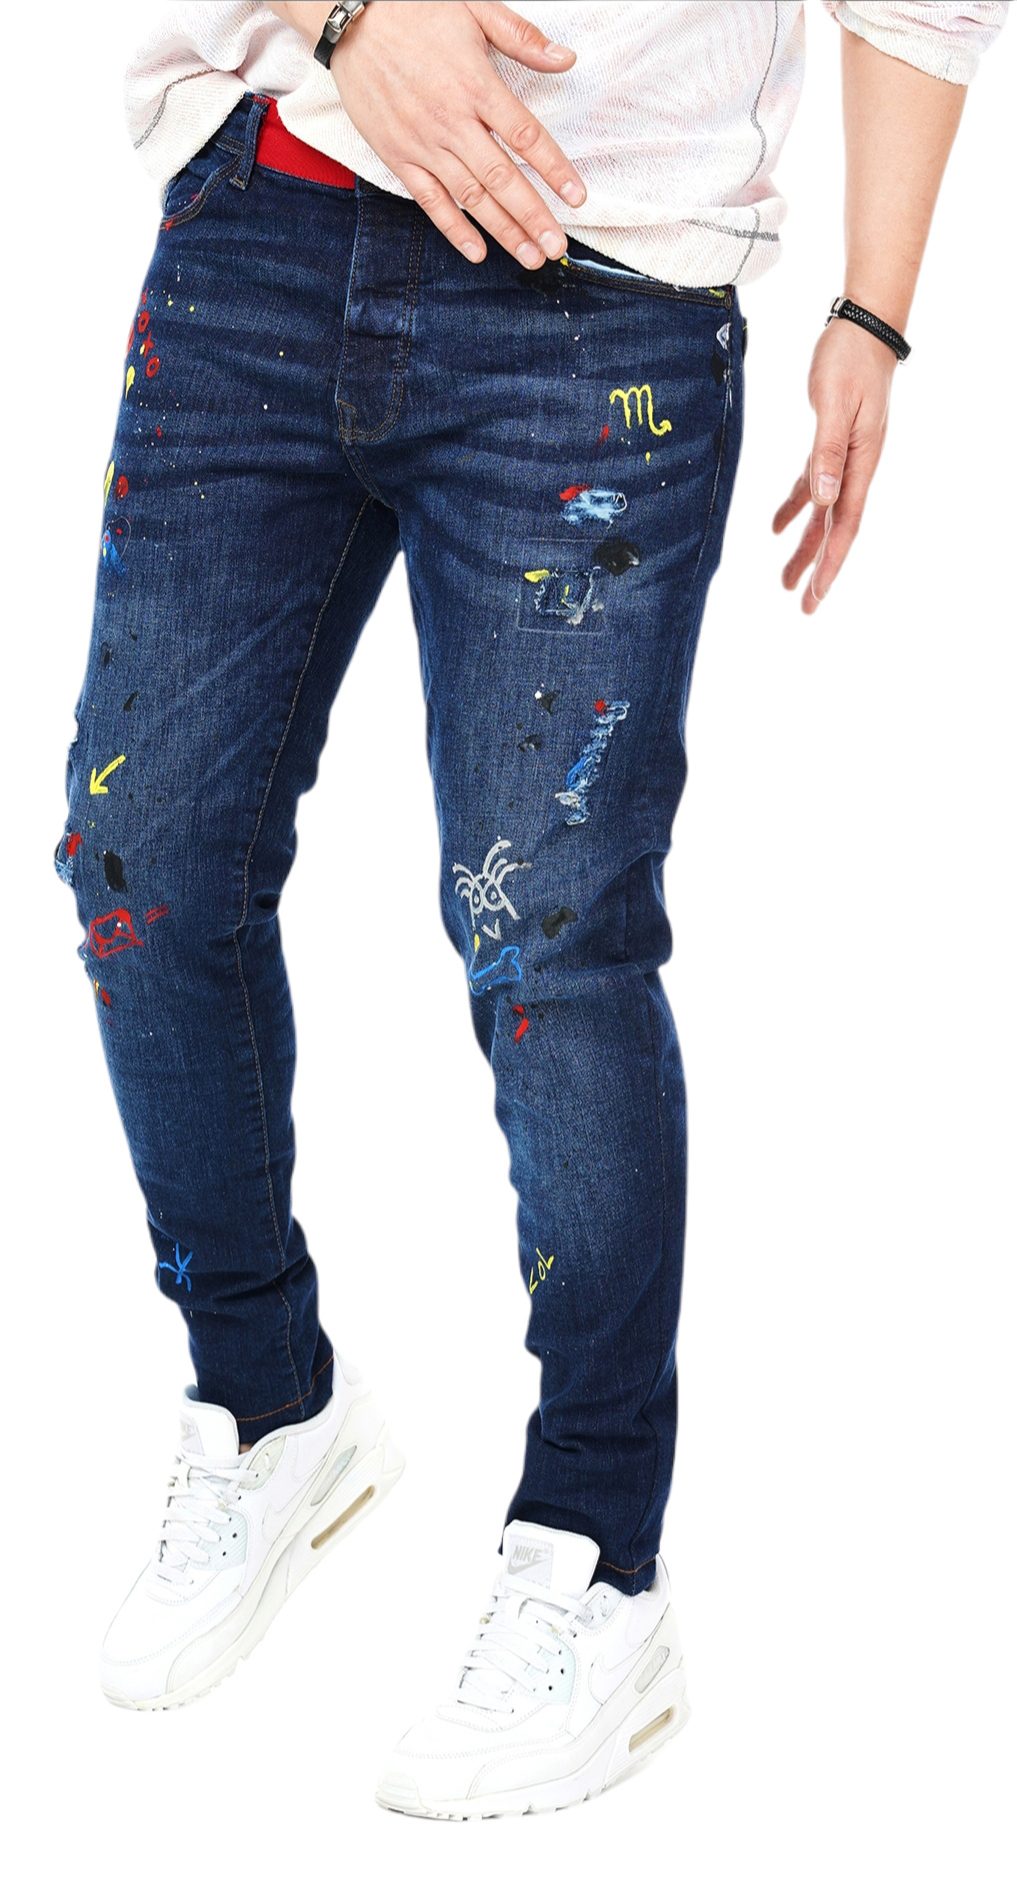 Jeans Custom Fit - editie limitata MJL5408